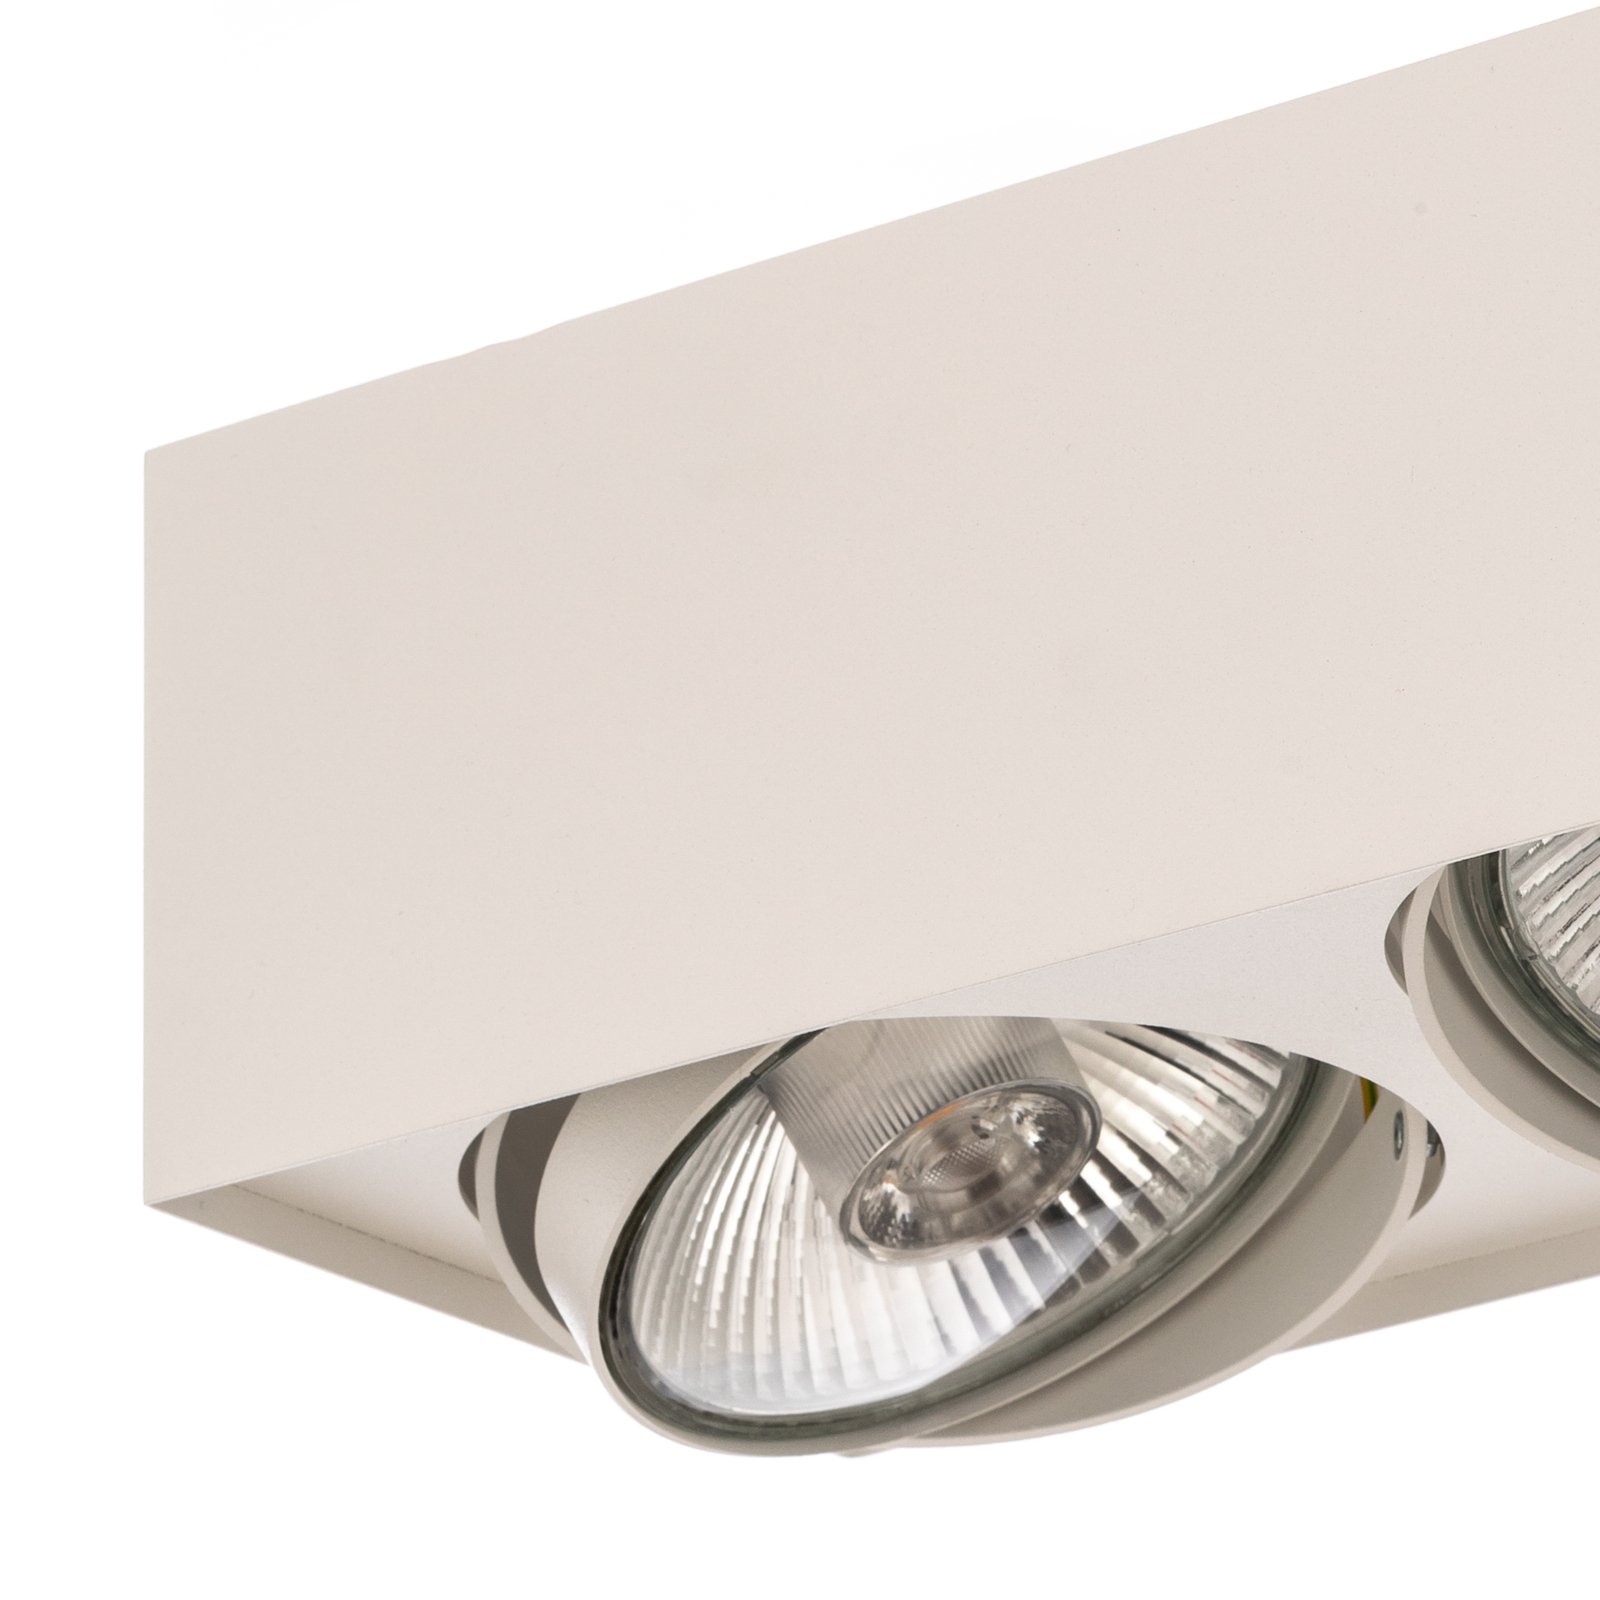 Ronda ceiling spotlight, two-bulb, white